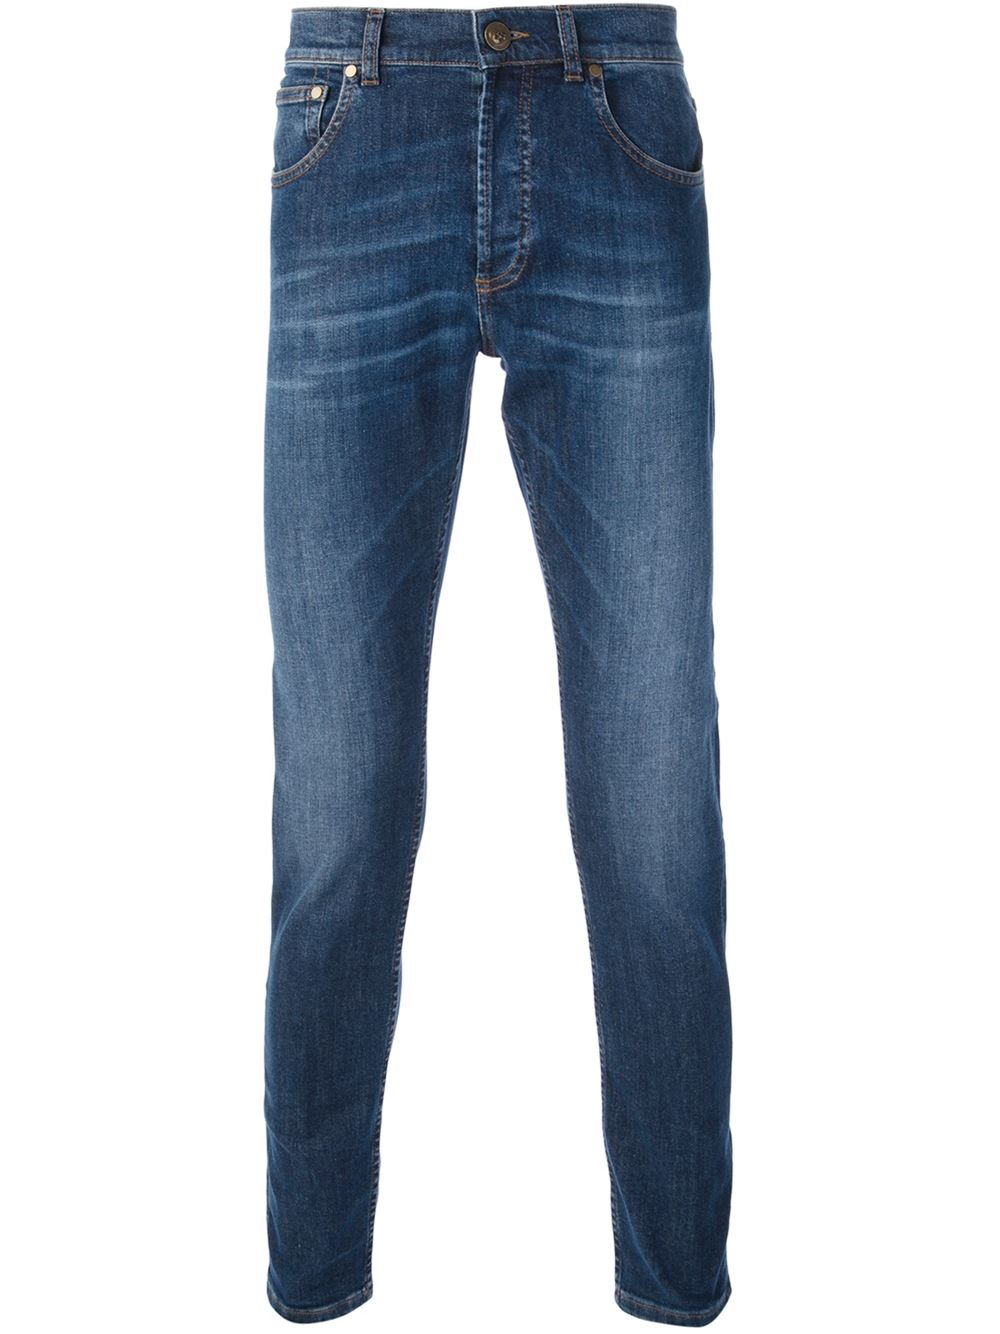 Alexander mcqueen Skinny Jeans in Blue for Men | Lyst